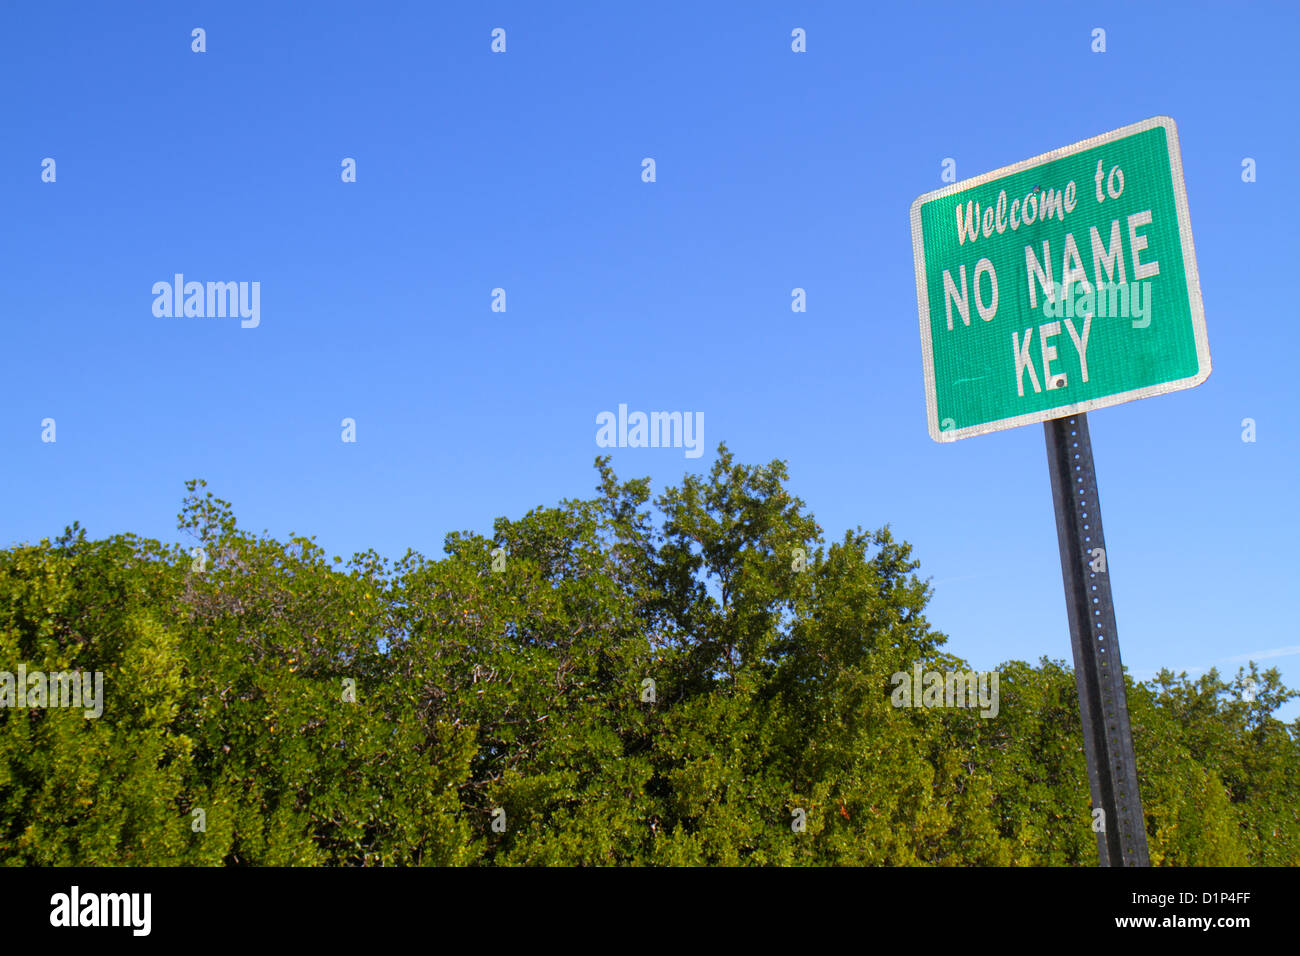 Florida Florida Keys,No Name Key,sign,logo,mangrove,arbres,visiteurs Voyage tourisme touristique sites touristiques culture culturelle, vacances Banque D'Images